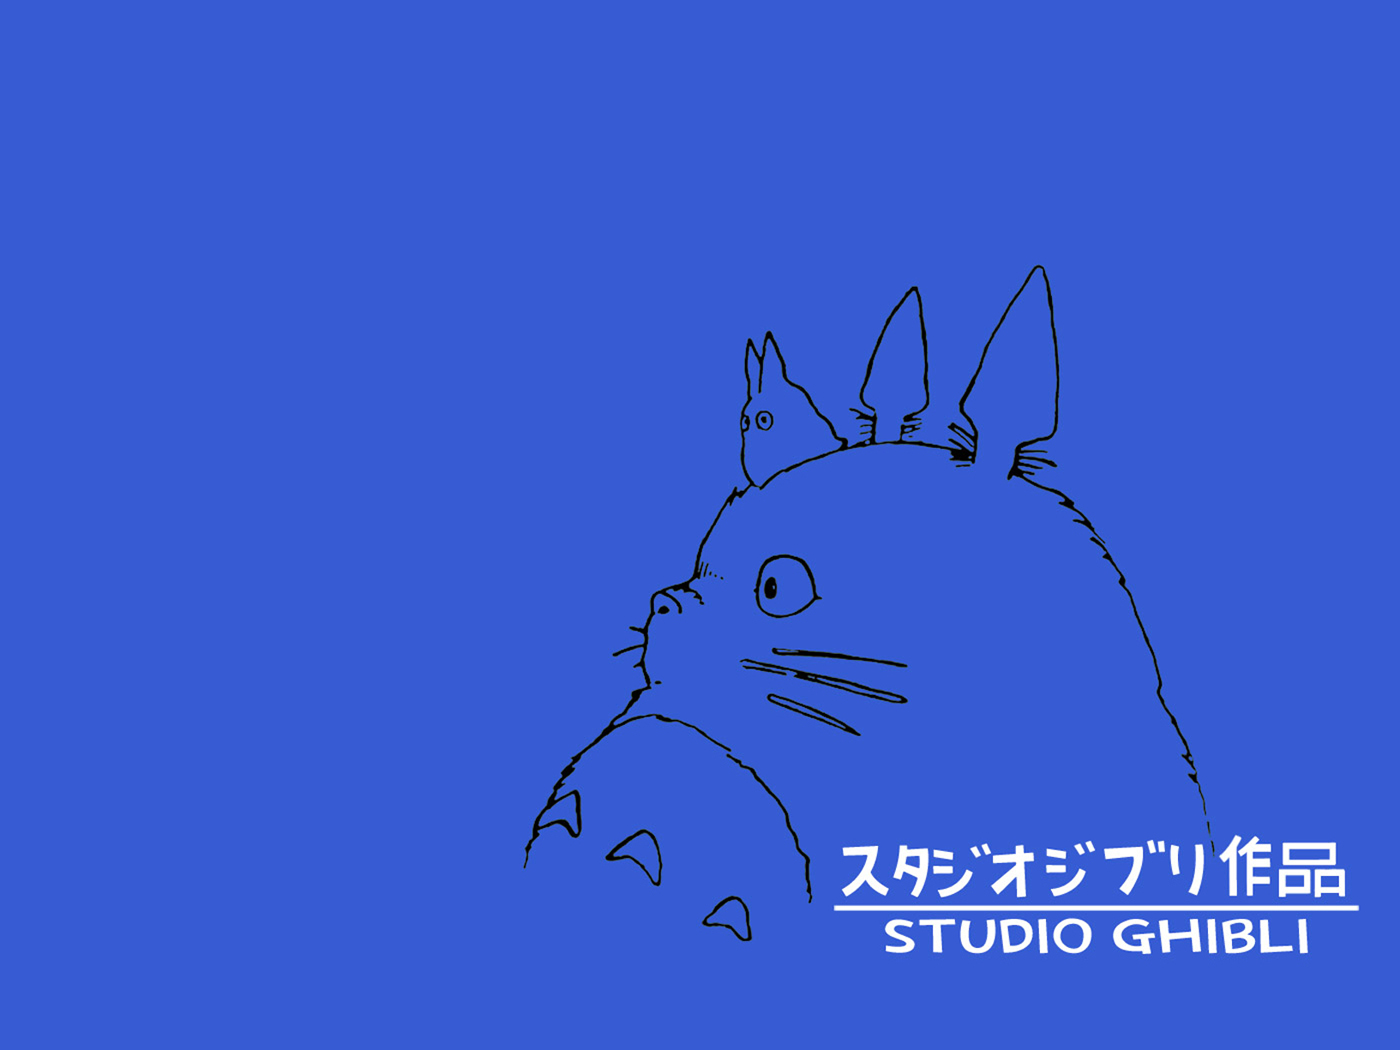 Studio Ghibli Iphone Wallpaper Studio ghibli wallpaper